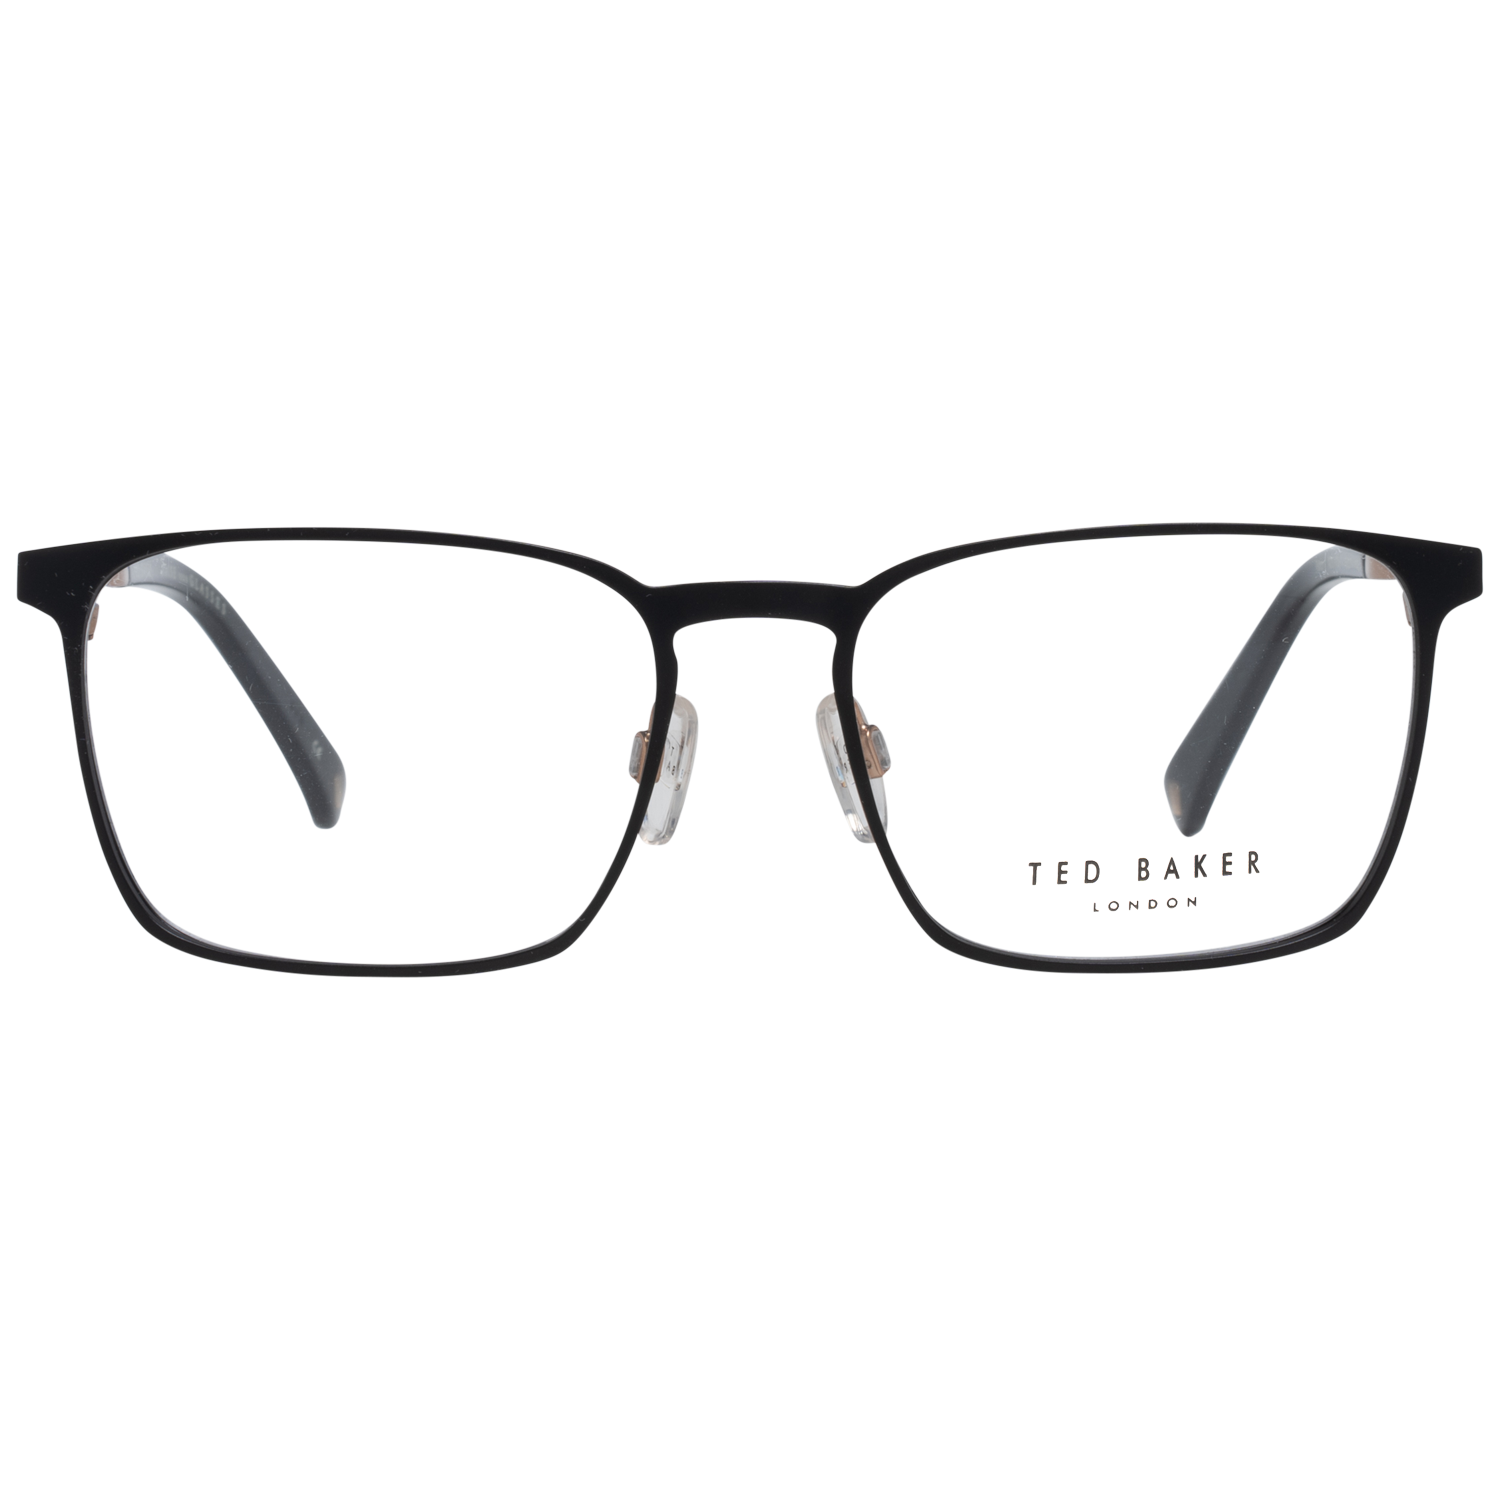 Ted Baker Frames Ted Baker Optical Frame Prescription Glasses TB4270 003 53 Patton Eyeglasses Eyewear UK USA Australia 